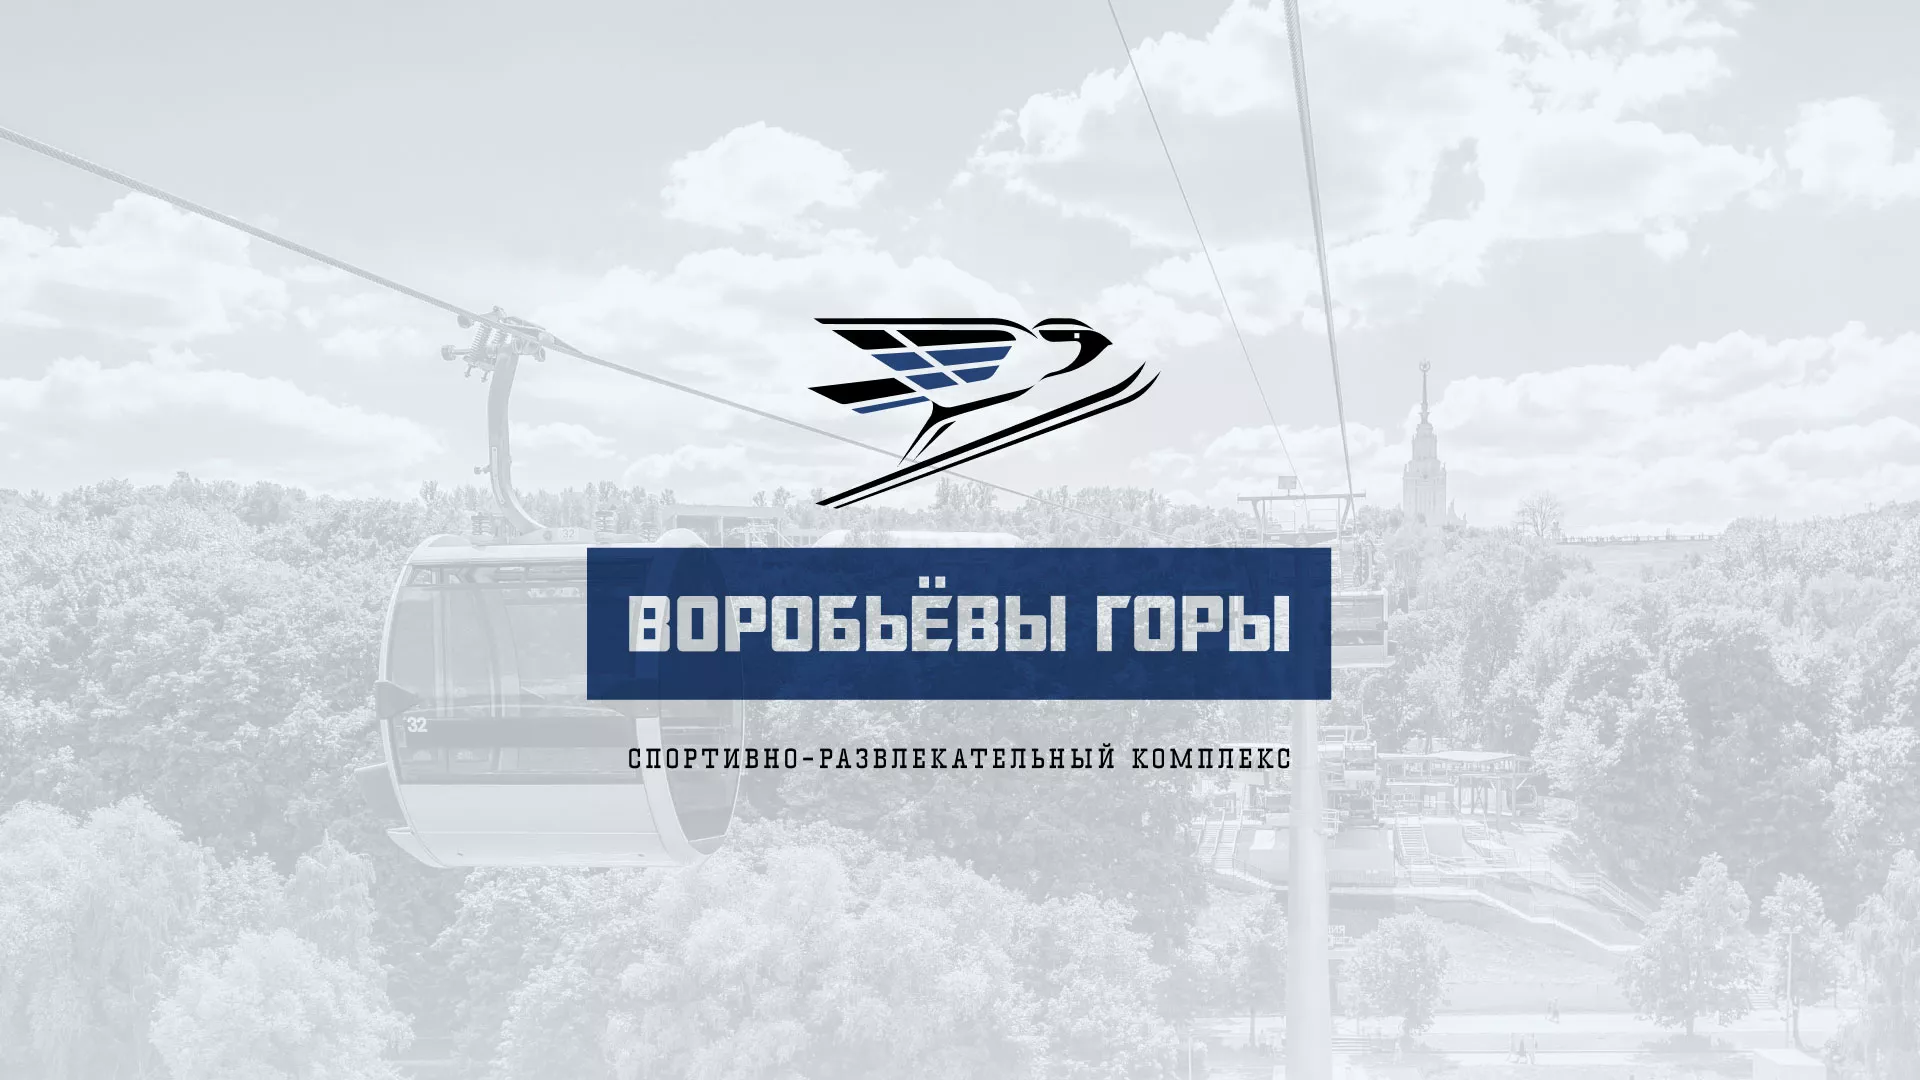 Разработка сайта в Звенигово для спортивно-развлекательного комплекса «Воробьёвы горы»